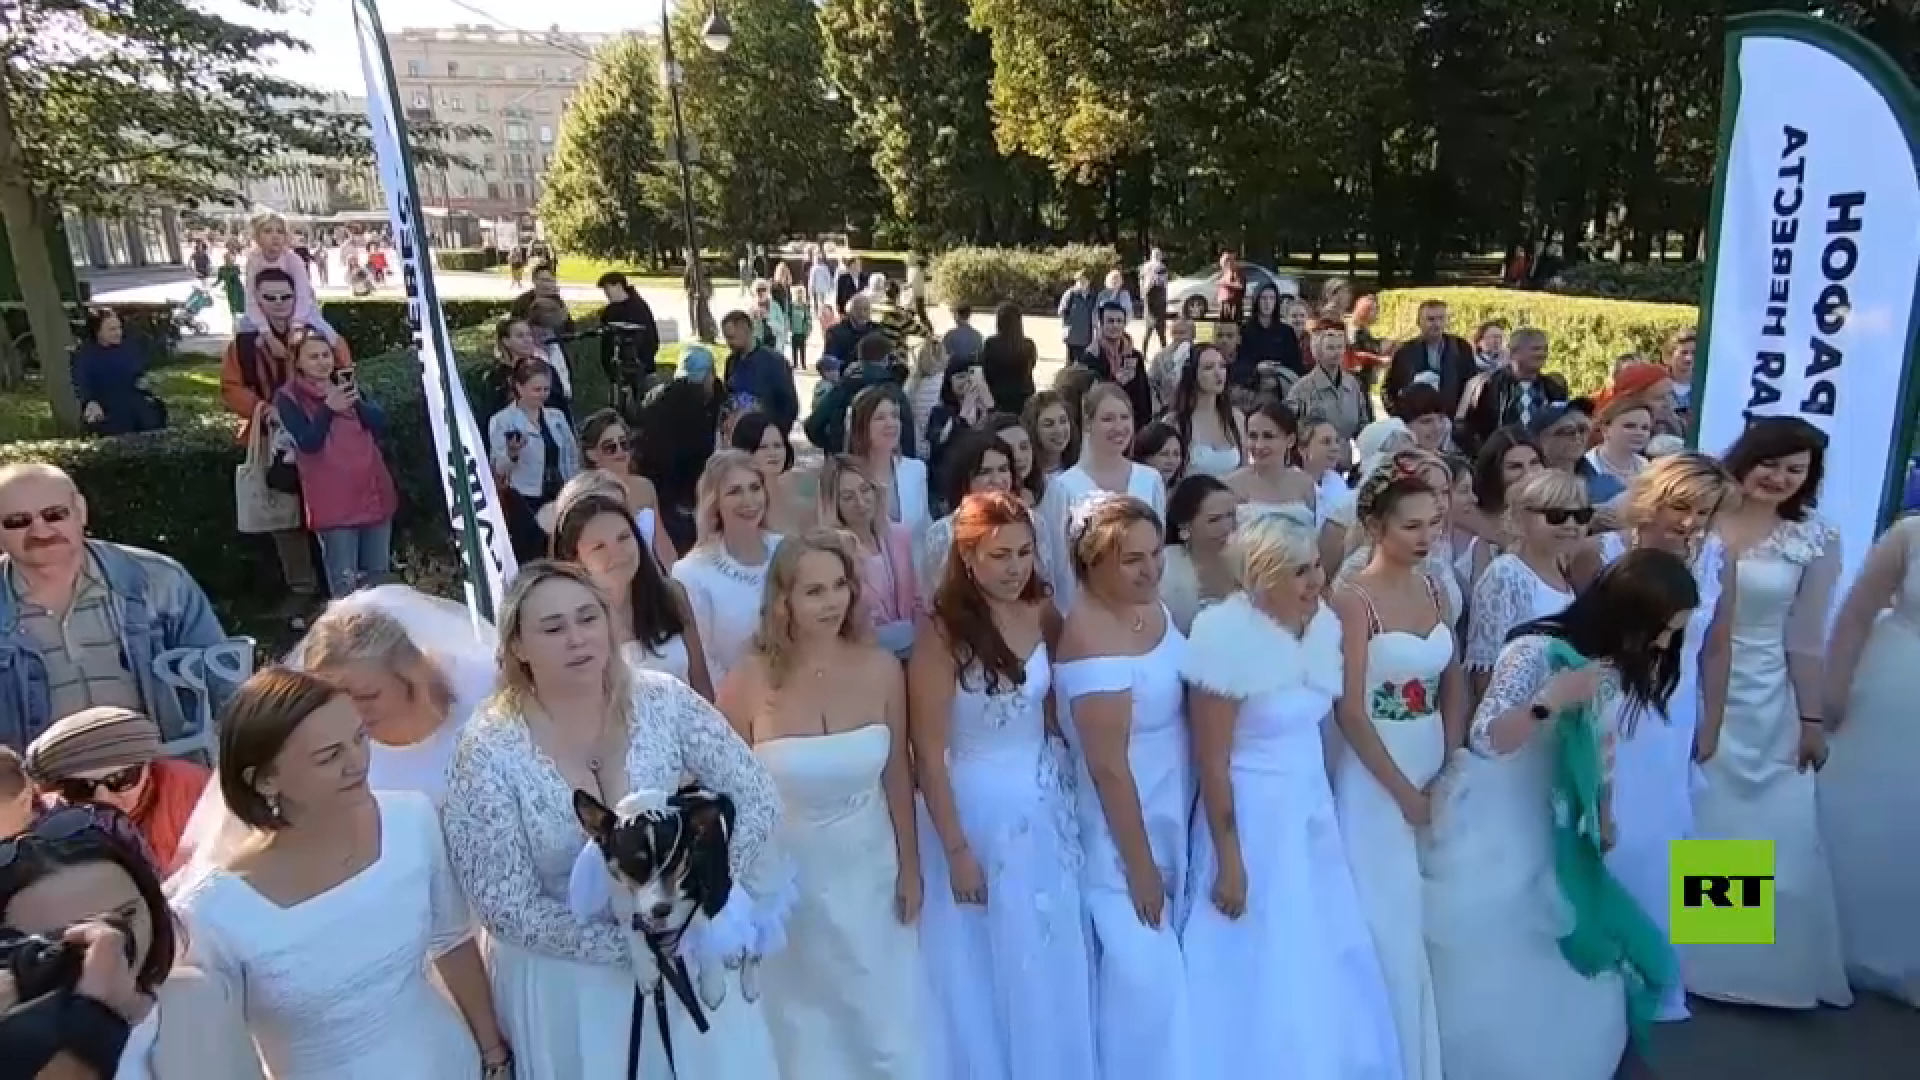 بالفيديو.. سباق العرائس في سان بطرسبورغ الروسية